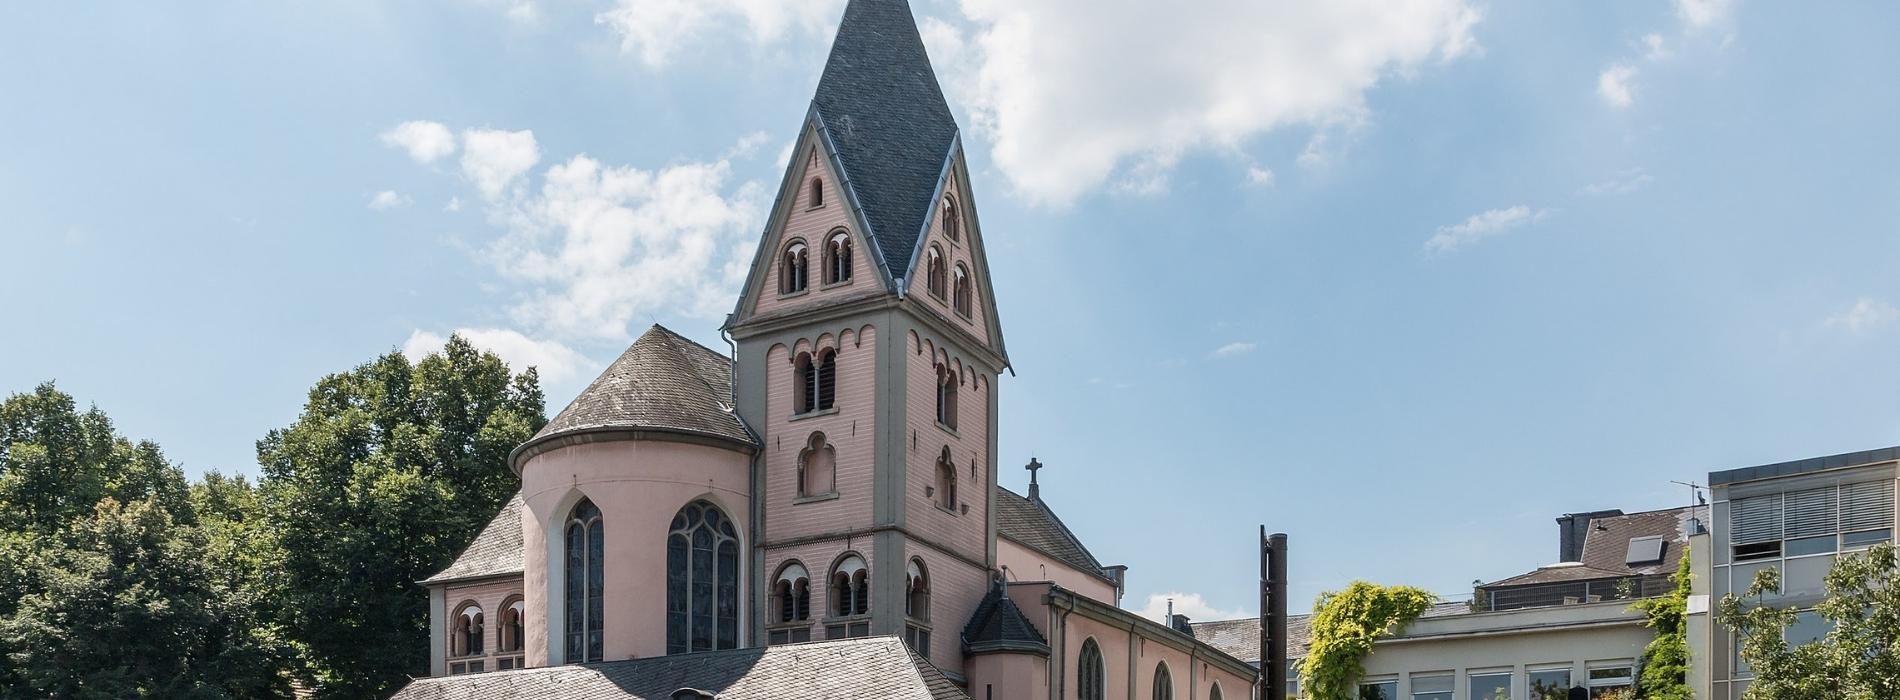 St. Maria in Lyskirchen